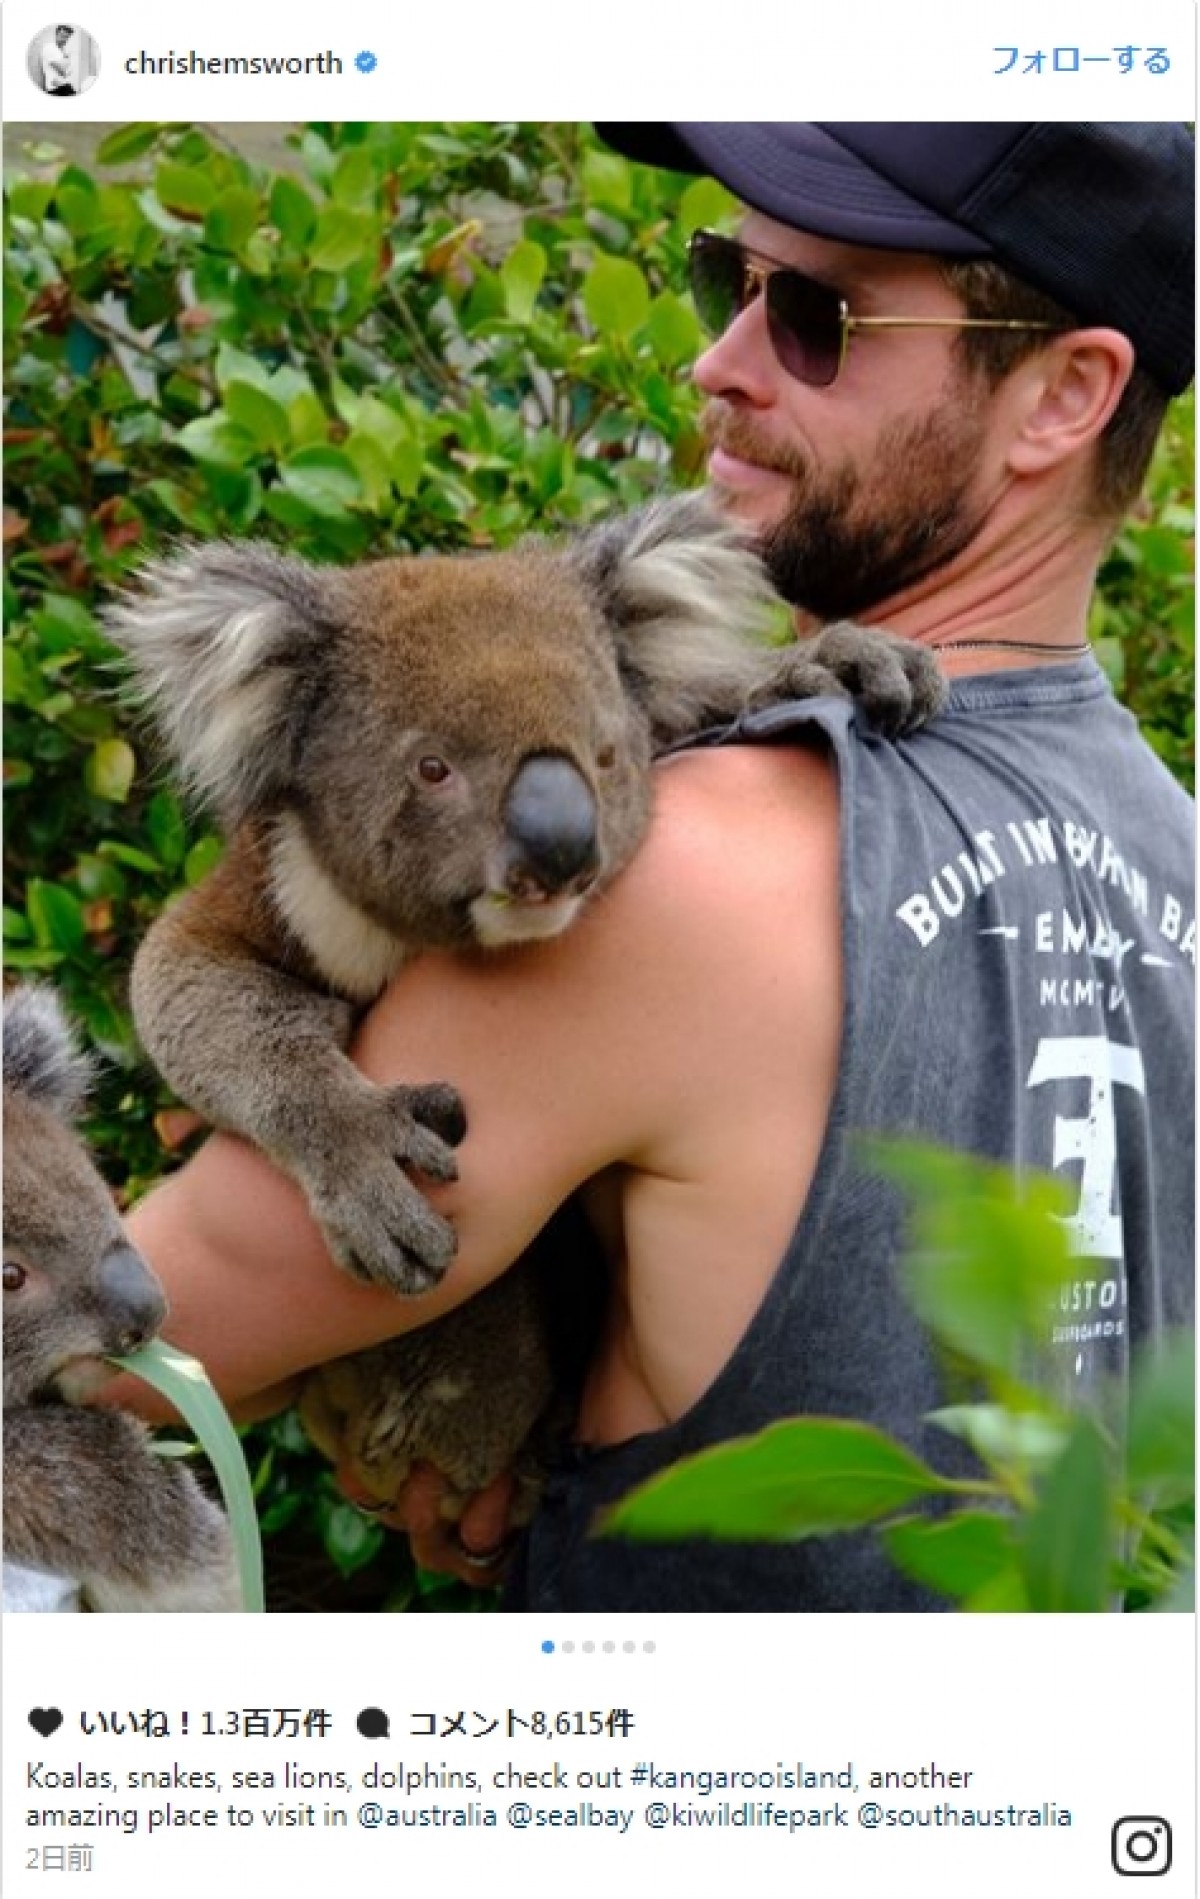 クリス・ヘムズワース、コアラを抱っこするショット披露　マッチョな釣り姿も話題に